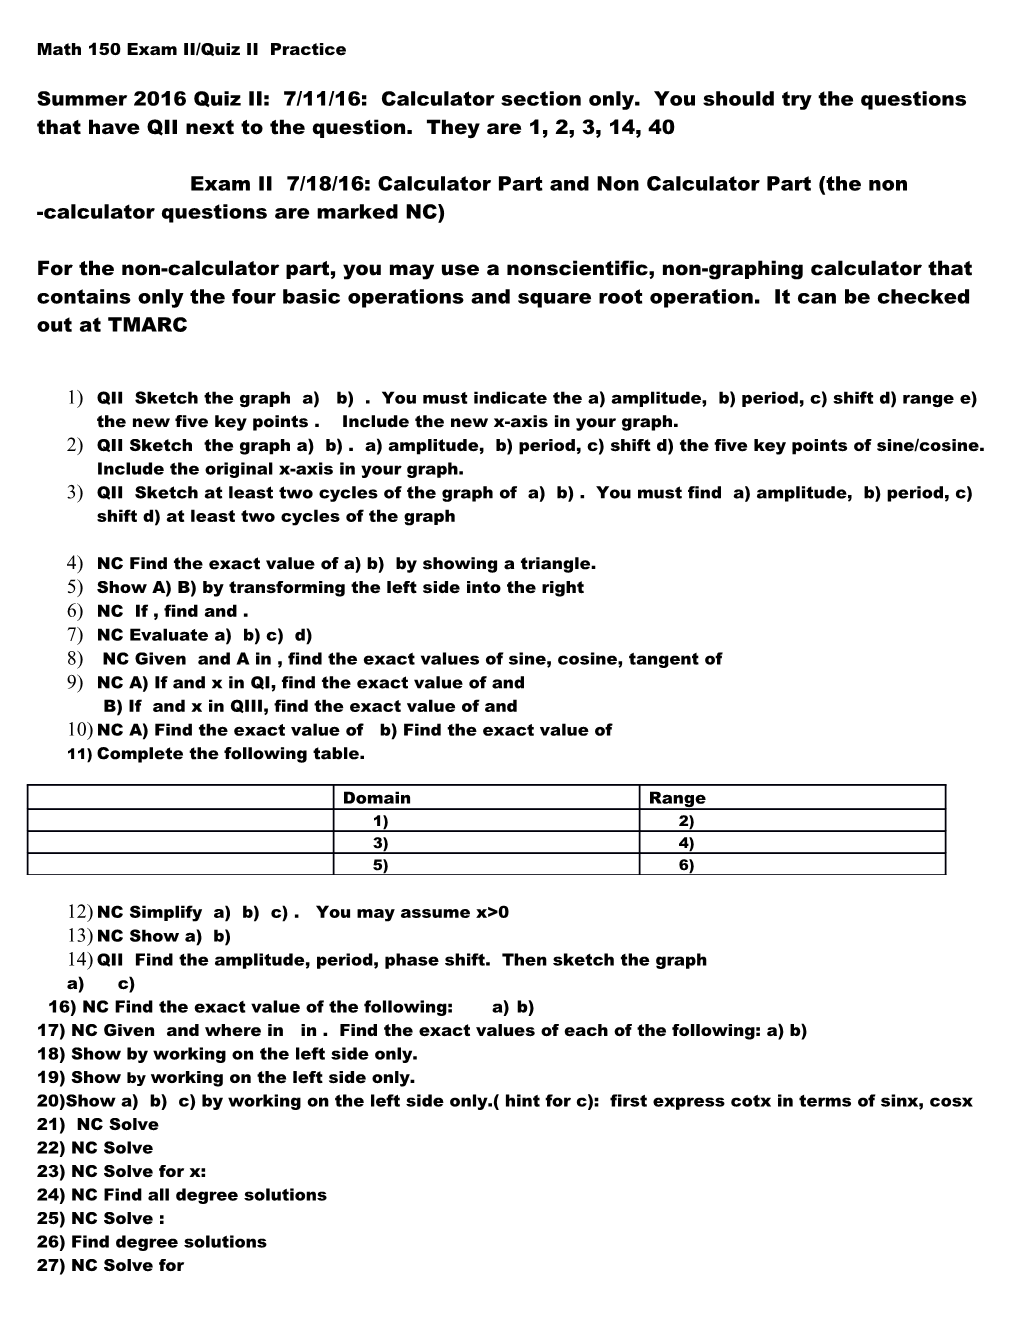 Math 150 Exam II Practice